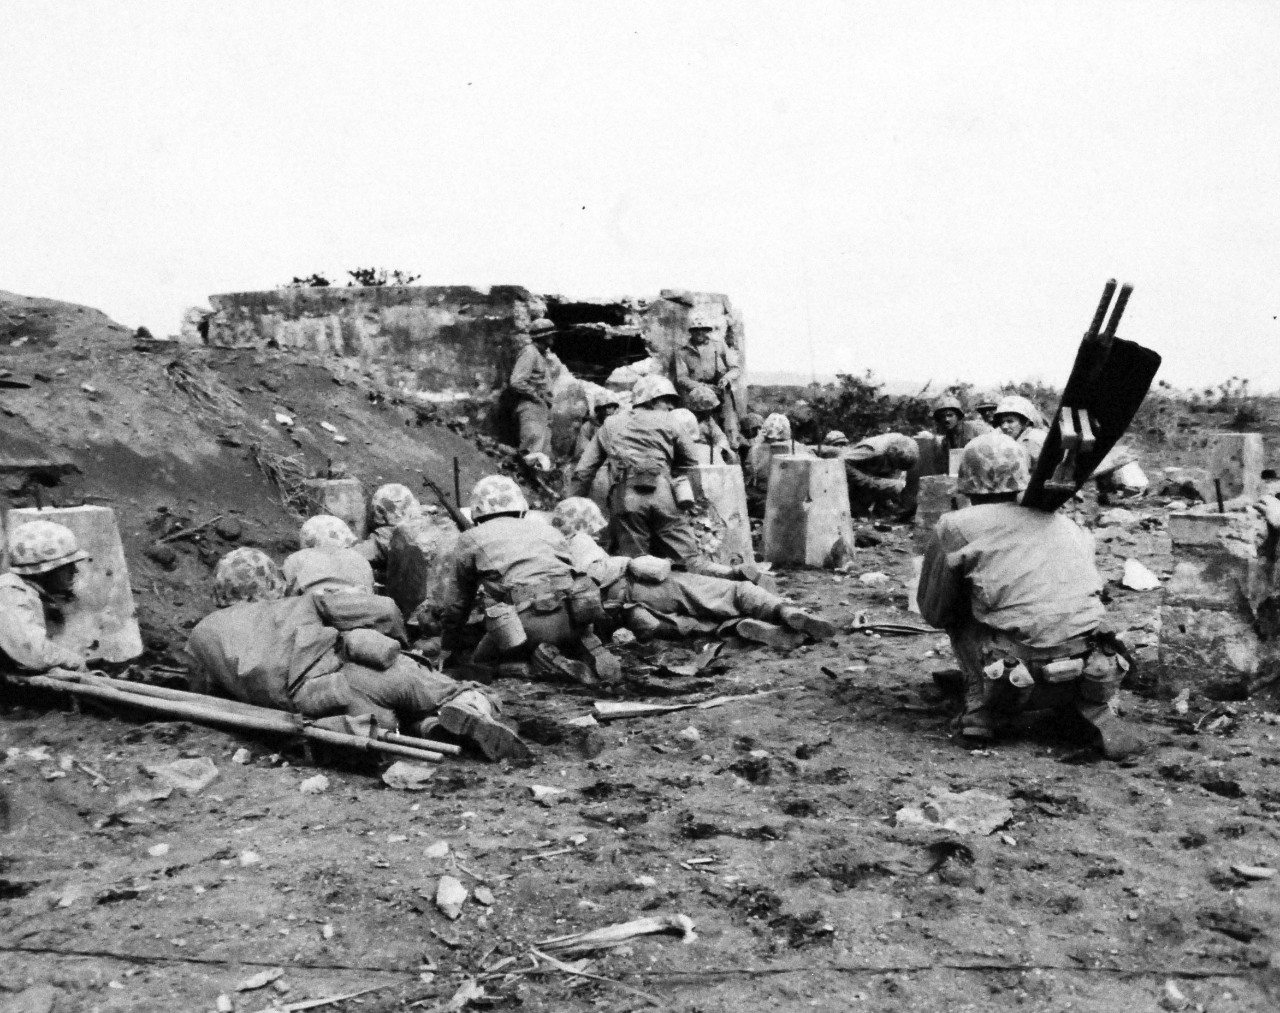 127-GW-306-110288: Battle for Iwo Jima, February-March 1945